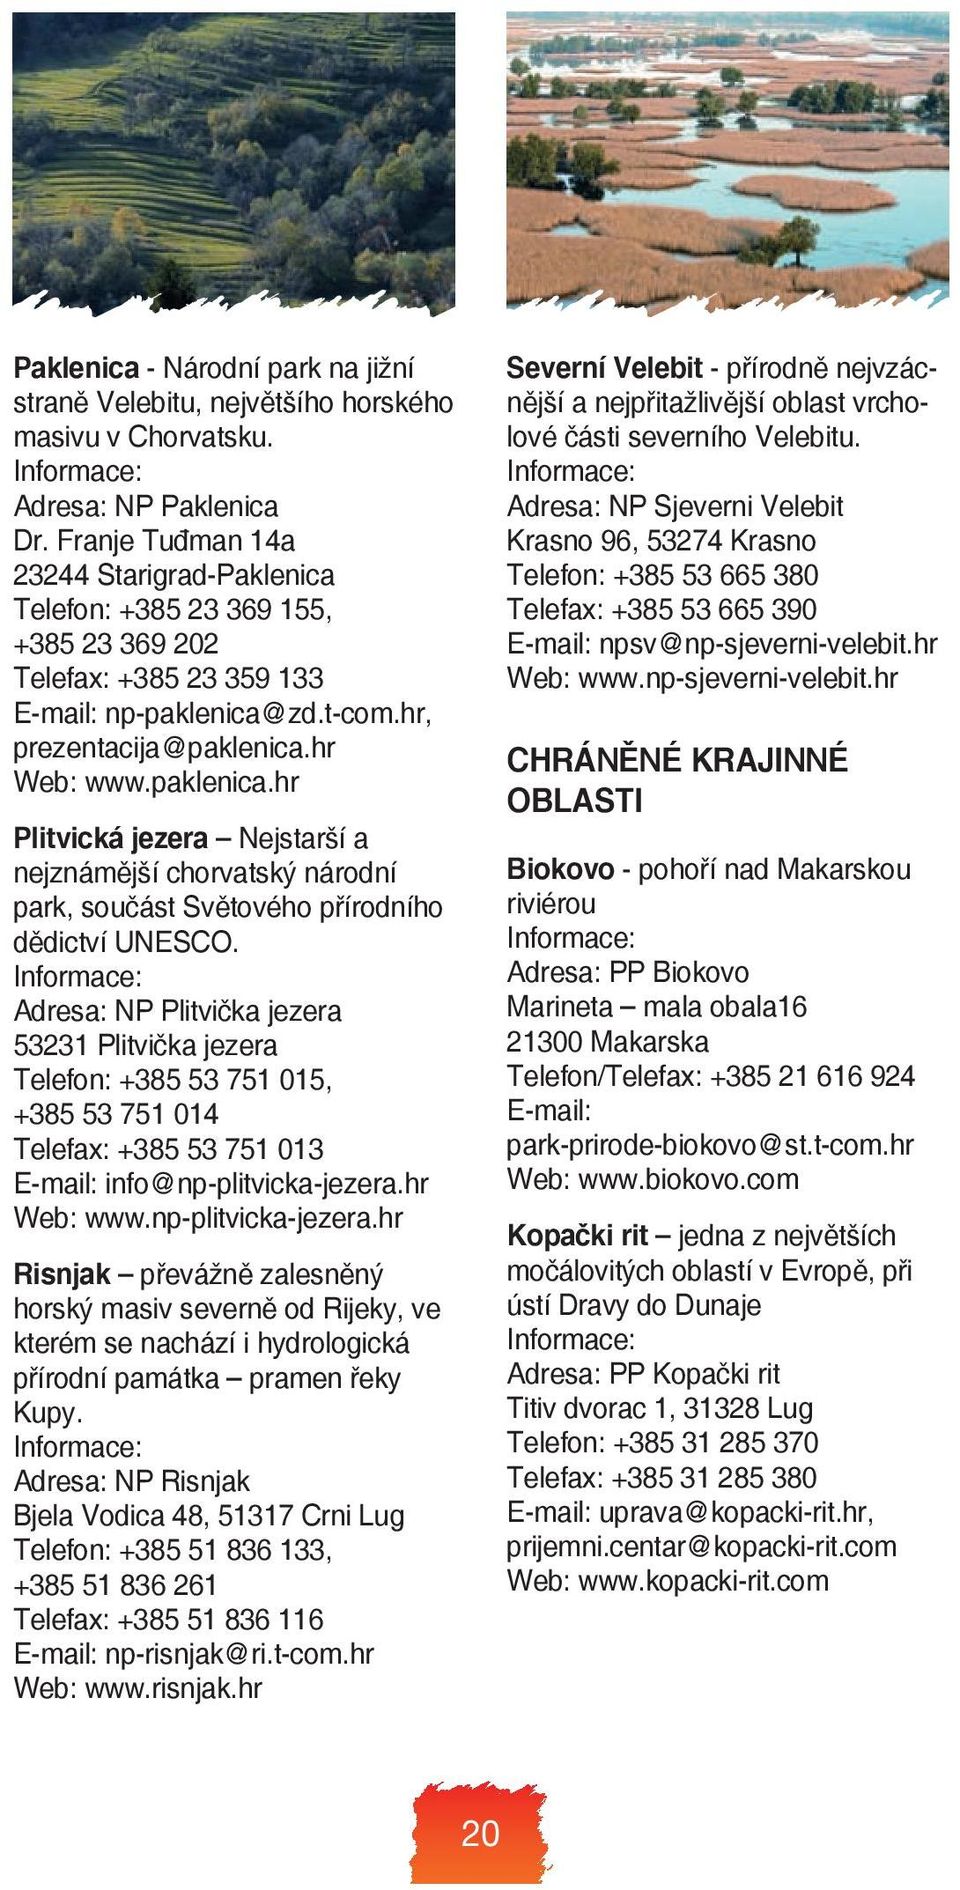 zd.t-com.hr, prezentacija@paklenica.hr Web: www.paklenica.hr Plitvická jezera Nejstarší a nejznámější chorvatský národní park, součást Světového přírodního dědictví UNESCO.